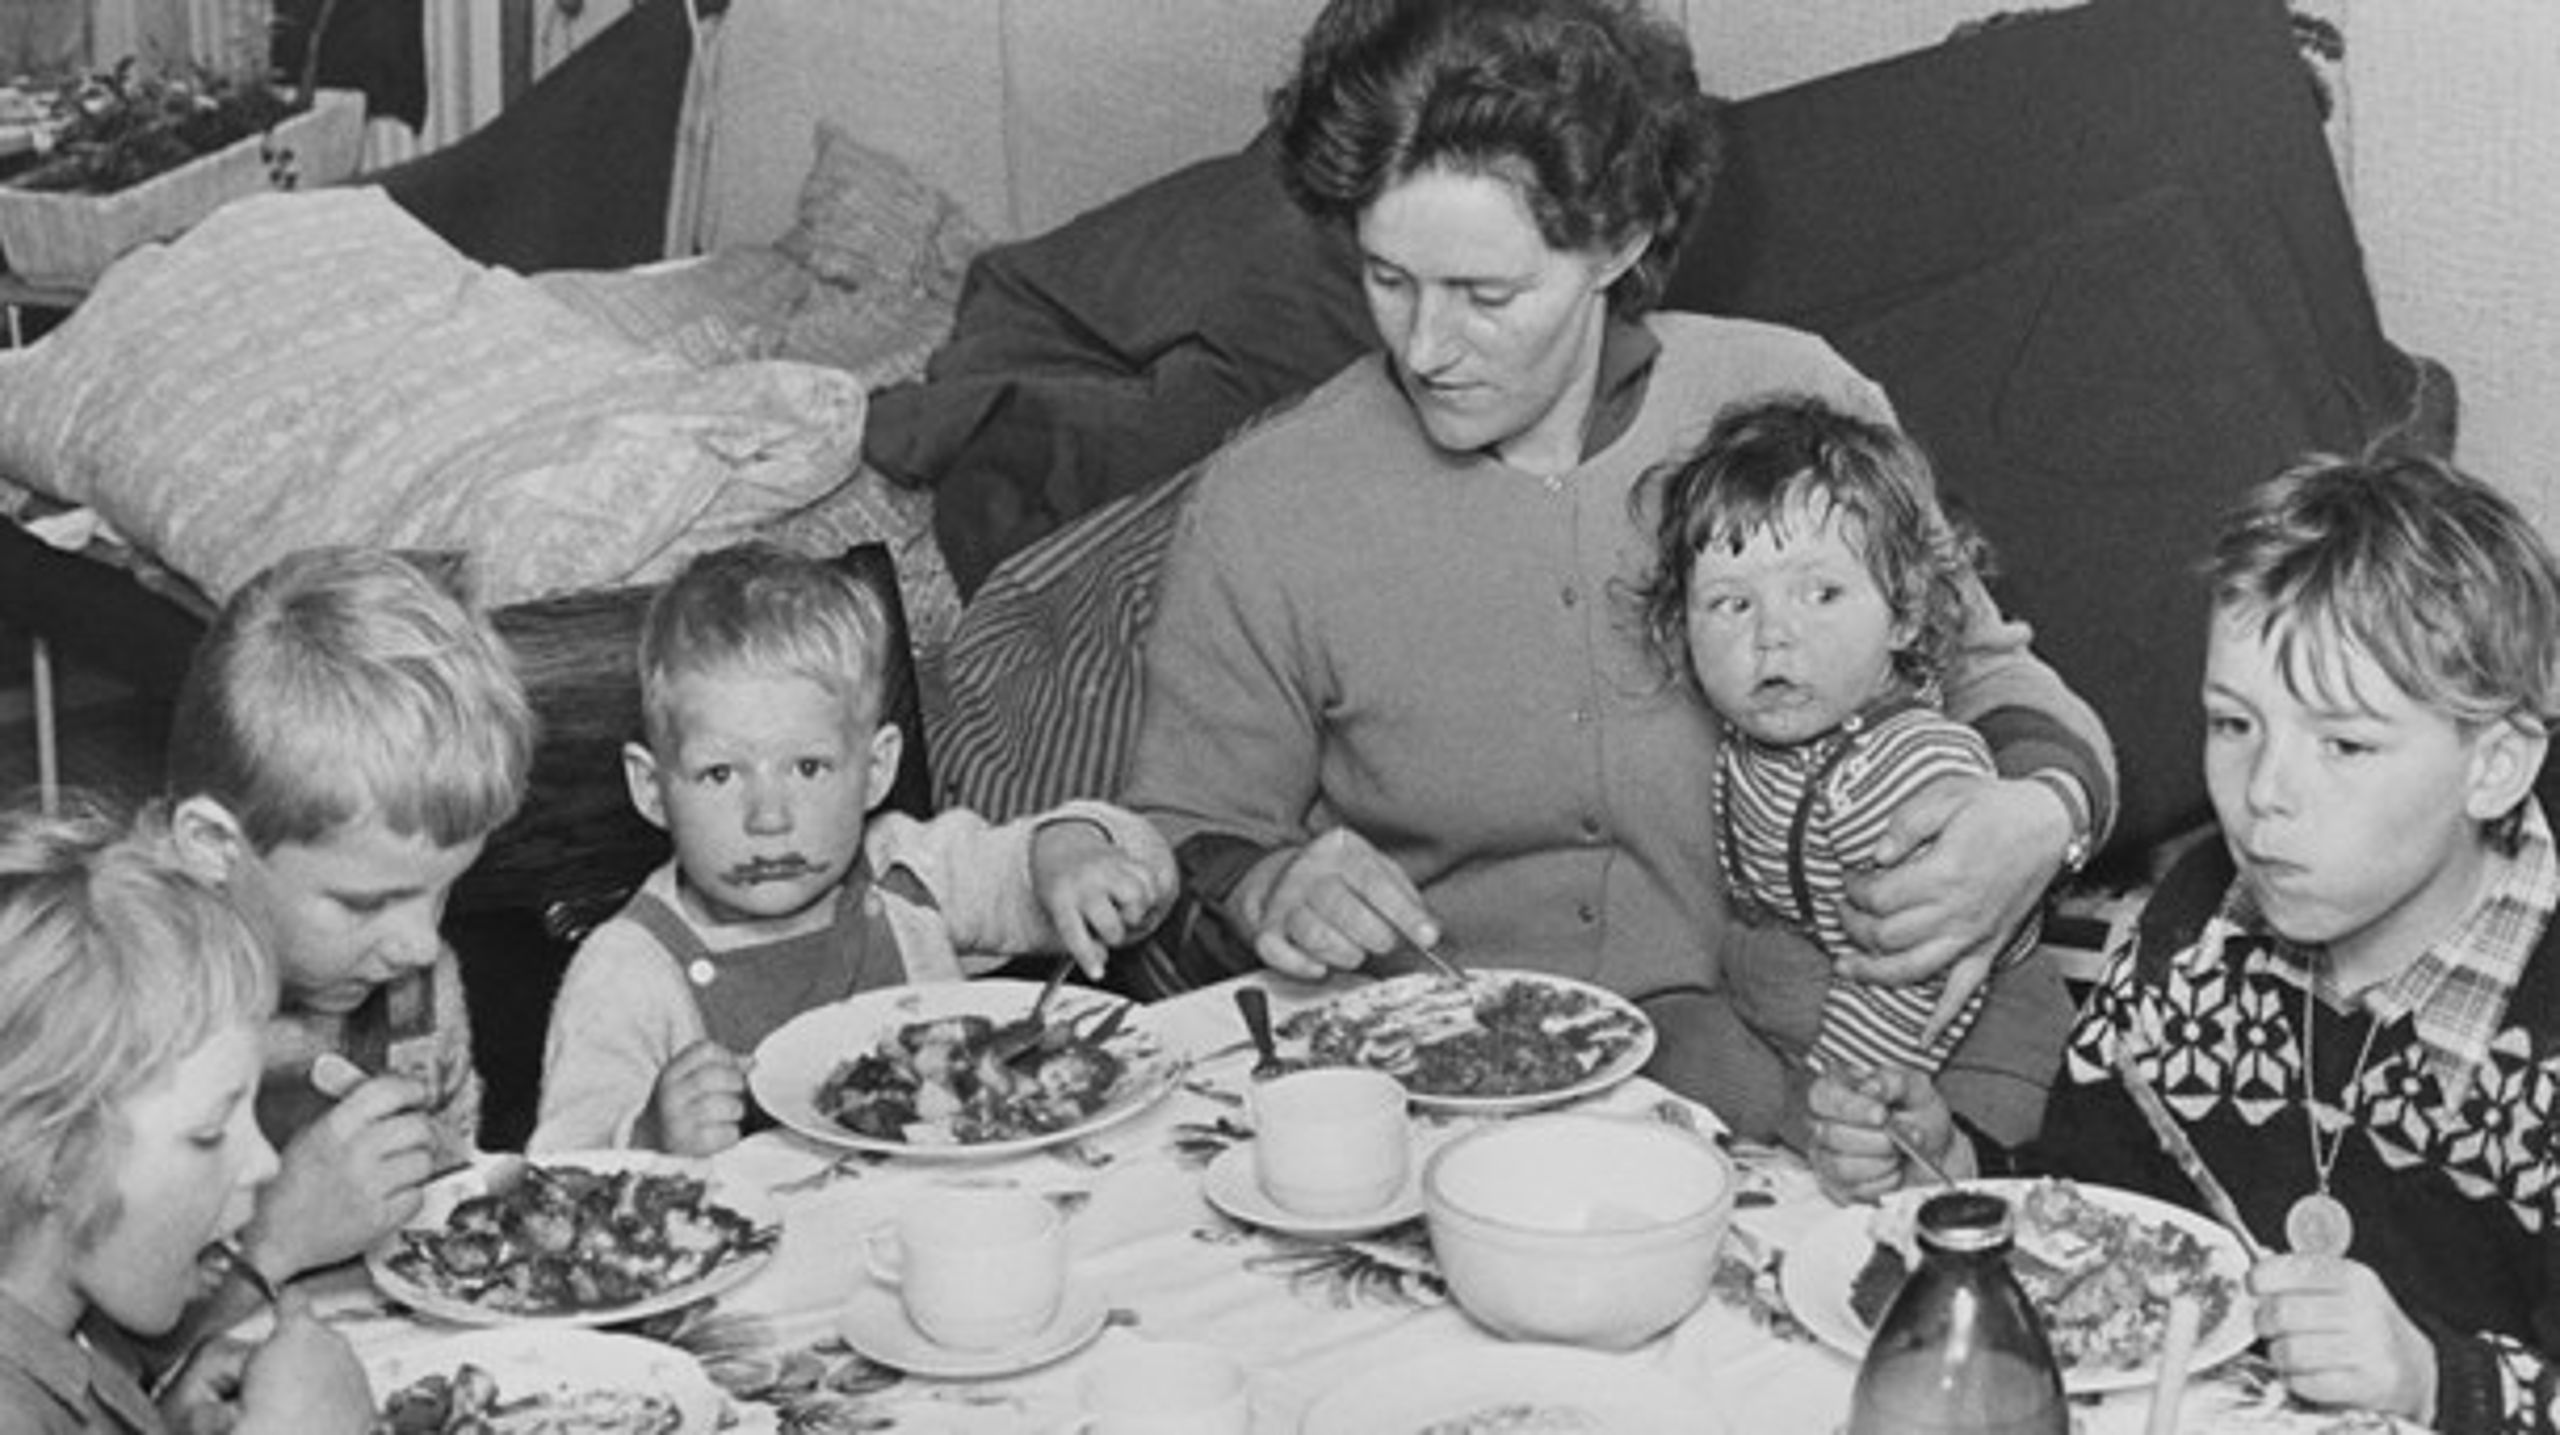 DENGANG: Dansk børnefamilie anno 1968. Familien Jeppesen spiser middag.